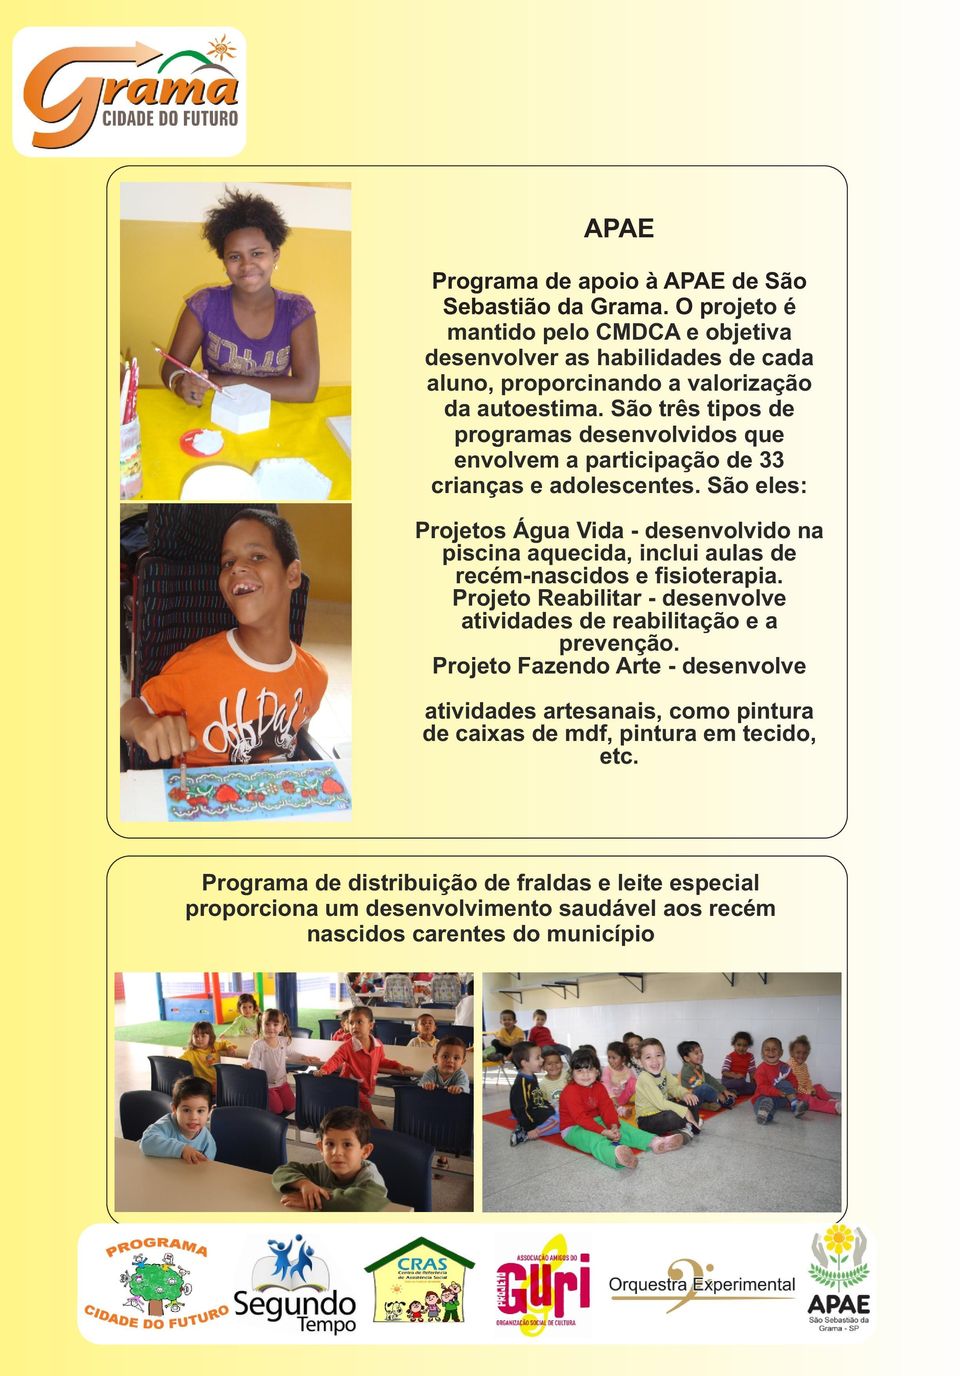 São três tipos de programas desenvolvidos que envolvem a participação de 33 crianças e adolescentes.